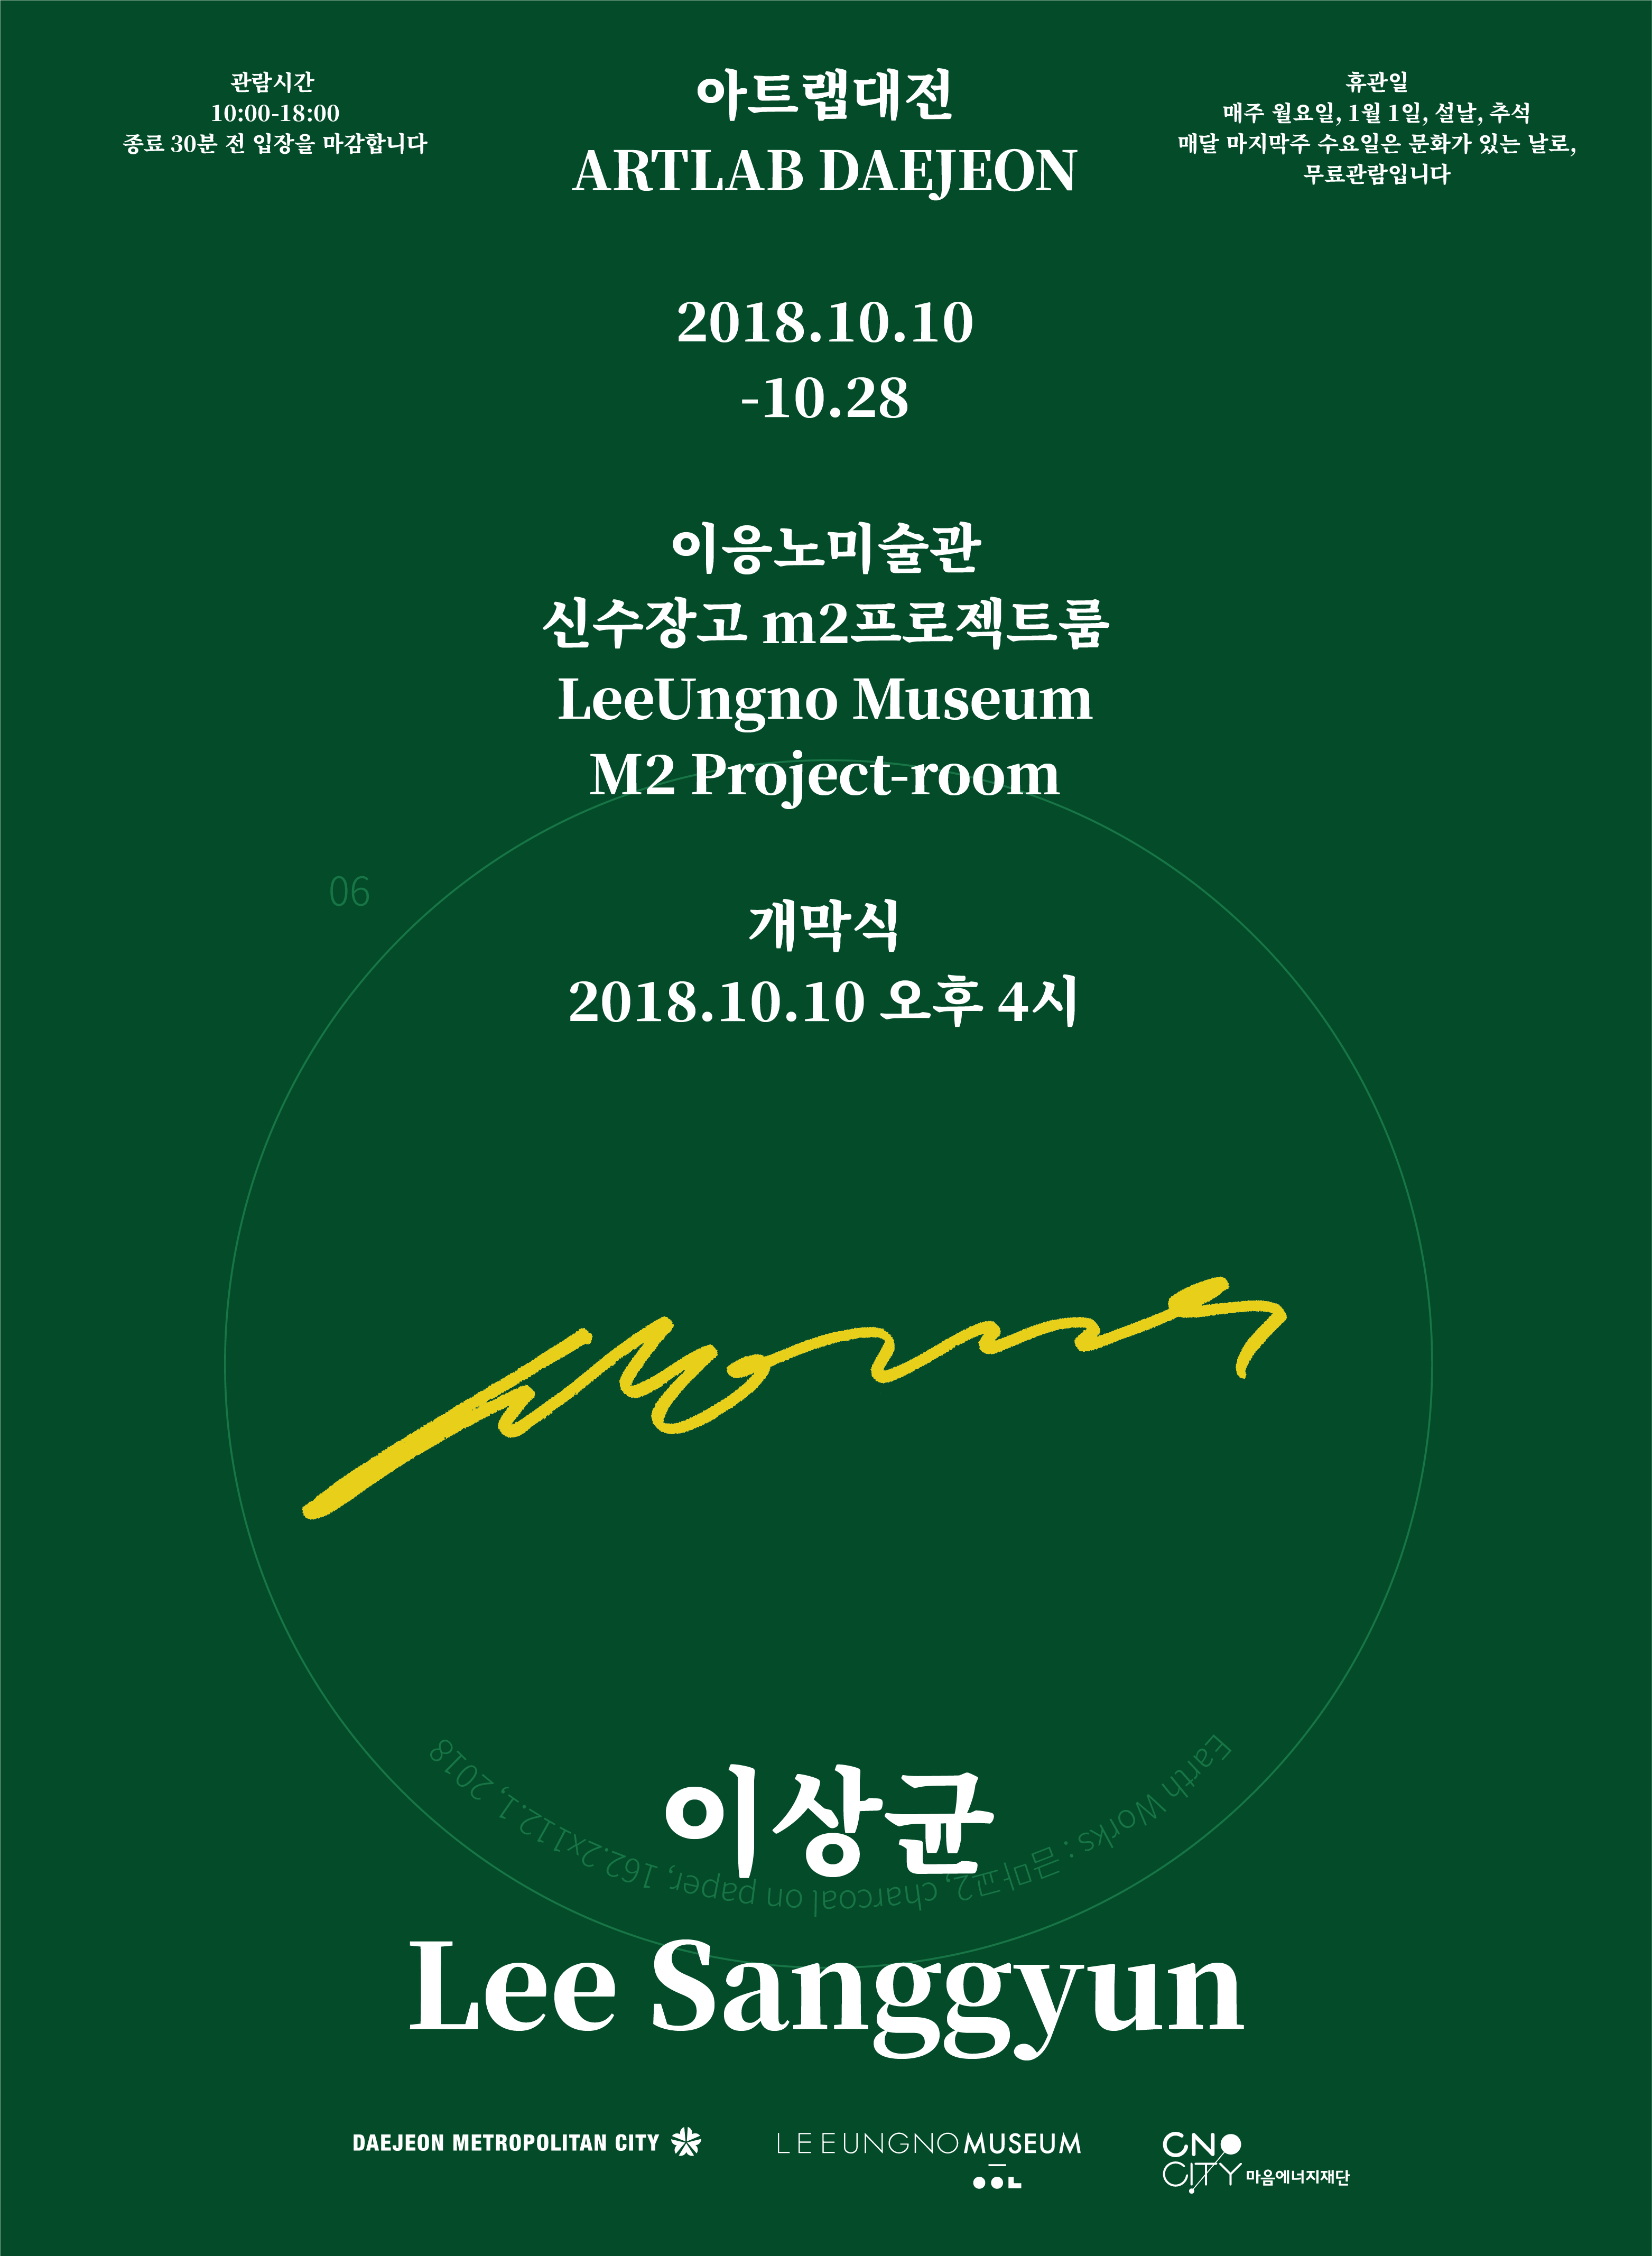 2018 ARTLAB DAEJEON : October, Lee Sang Gyun